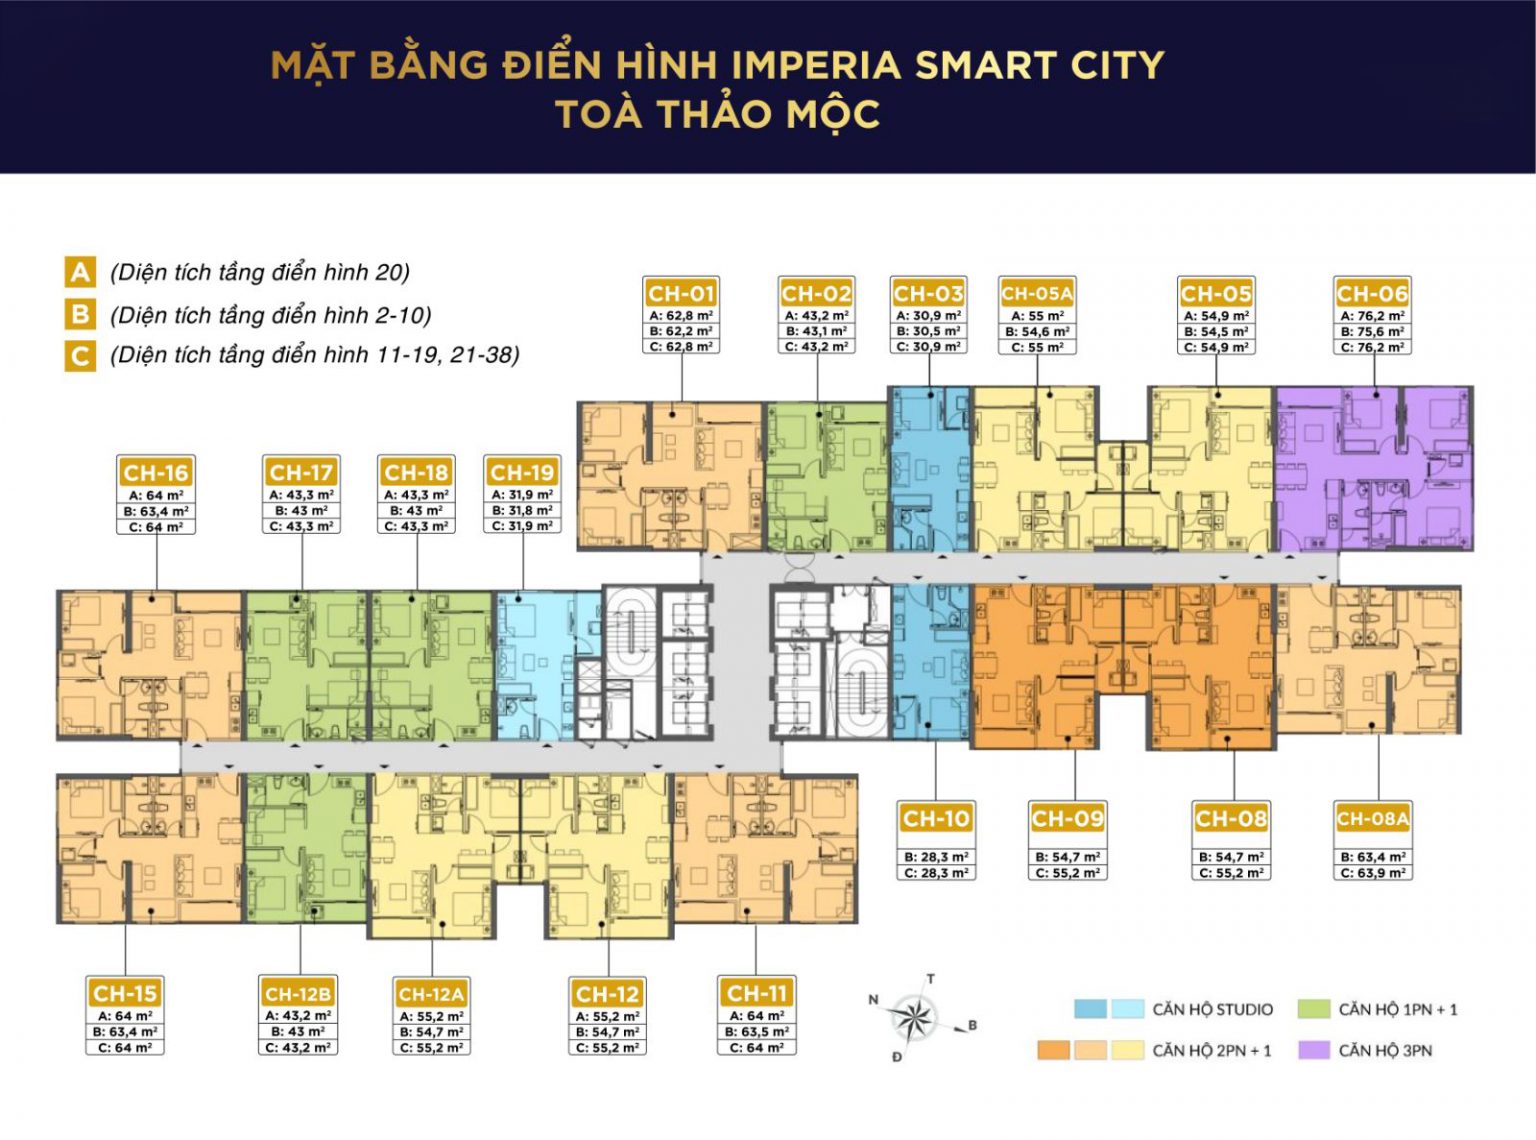 Chính chủ cần cho thuê căn hộ 2PN +1 1WC diện tích 55,2m2 tòa l5 - Thảo Mộc Imperia Smart City